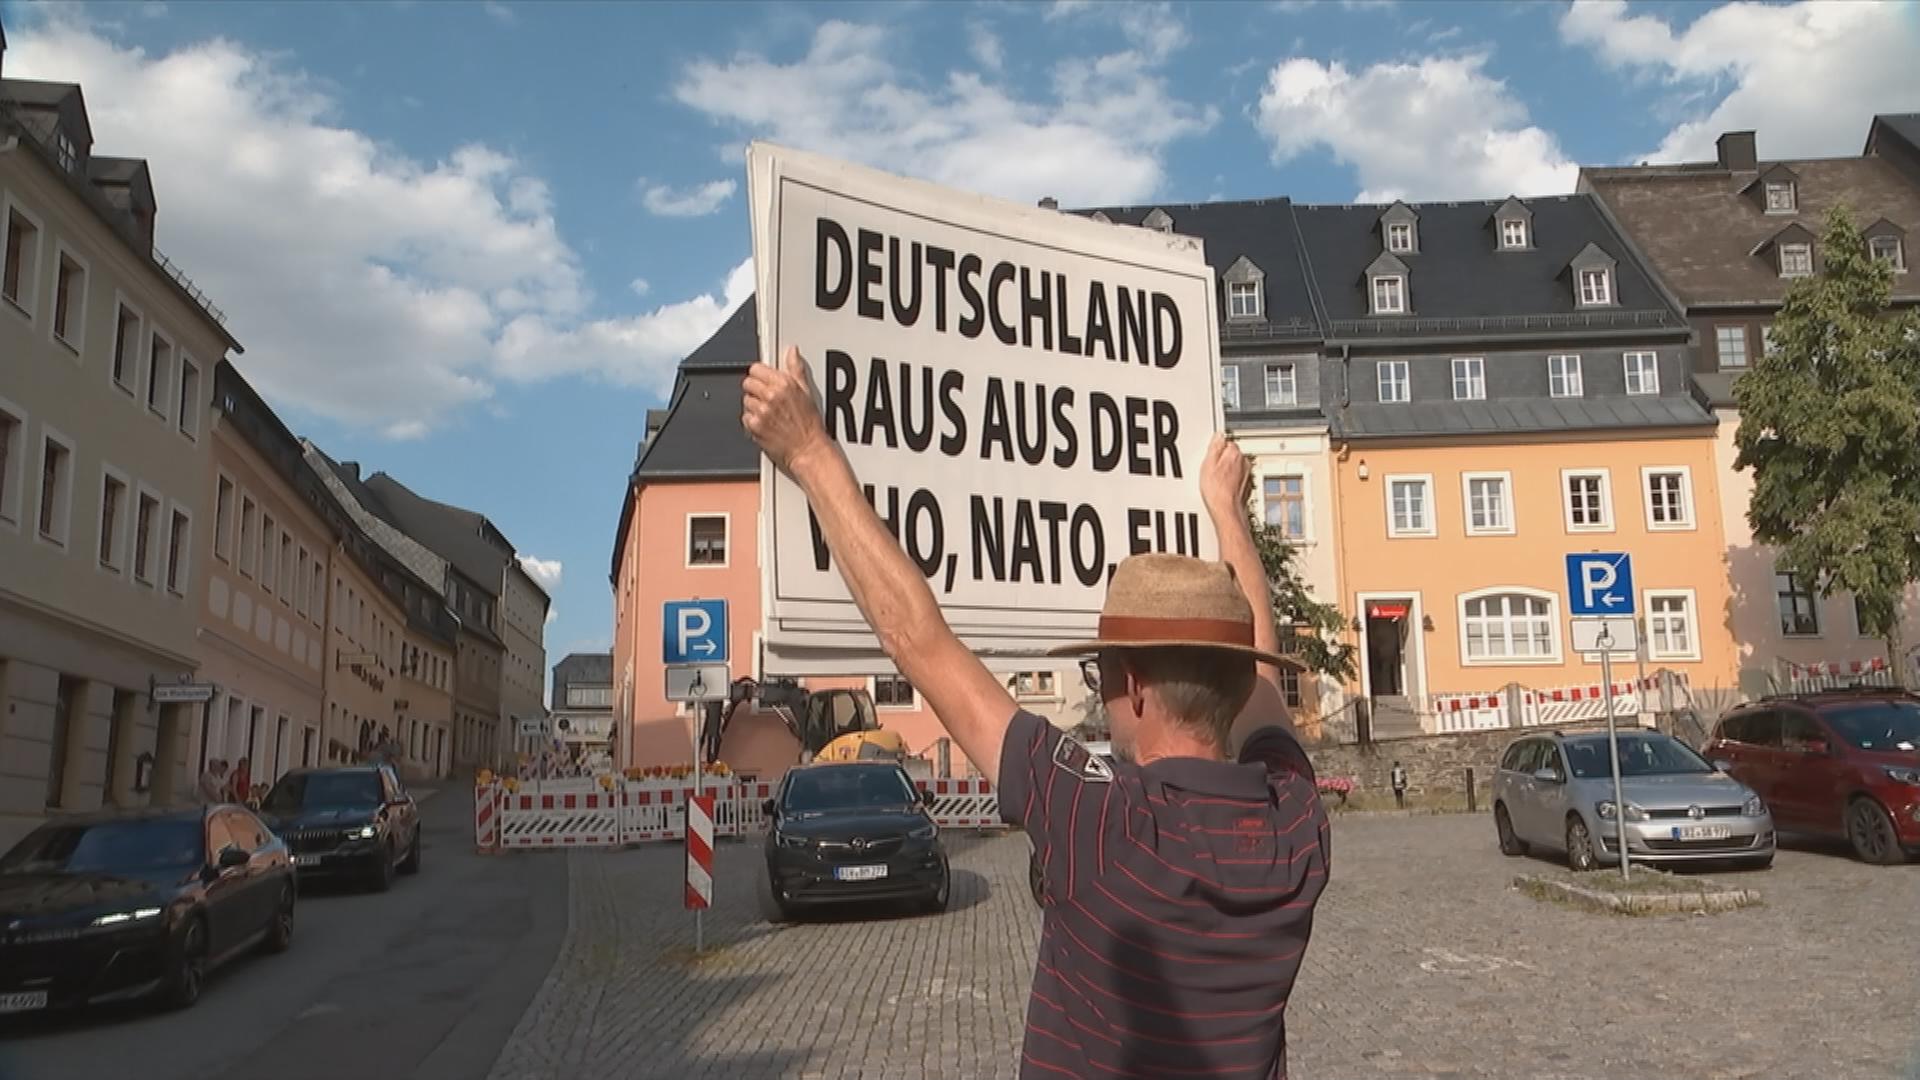 Mann hält Plakat nach oben "Deutschland raus aus der NATO/ EU"